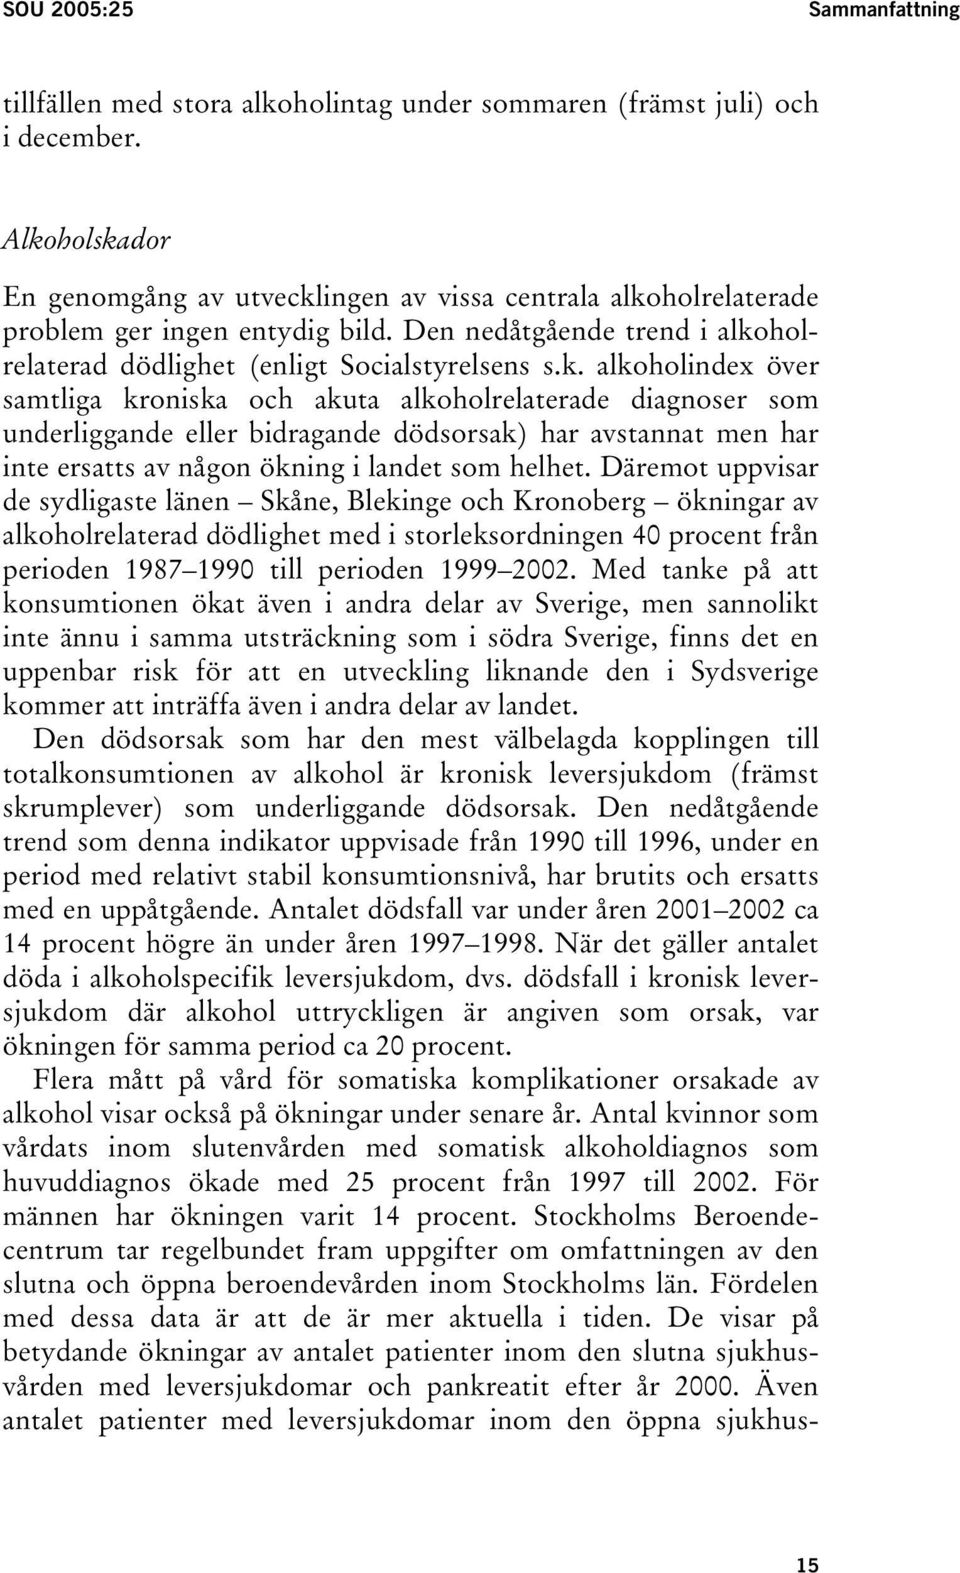 Däremot uppvisar de sydligaste länen Skåne, Blekinge och Kronoberg ökningar av alkoholrelaterad dödlighet med i storleksordningen 40 procent från perioden 1987 1990 till perioden 1999 2002.